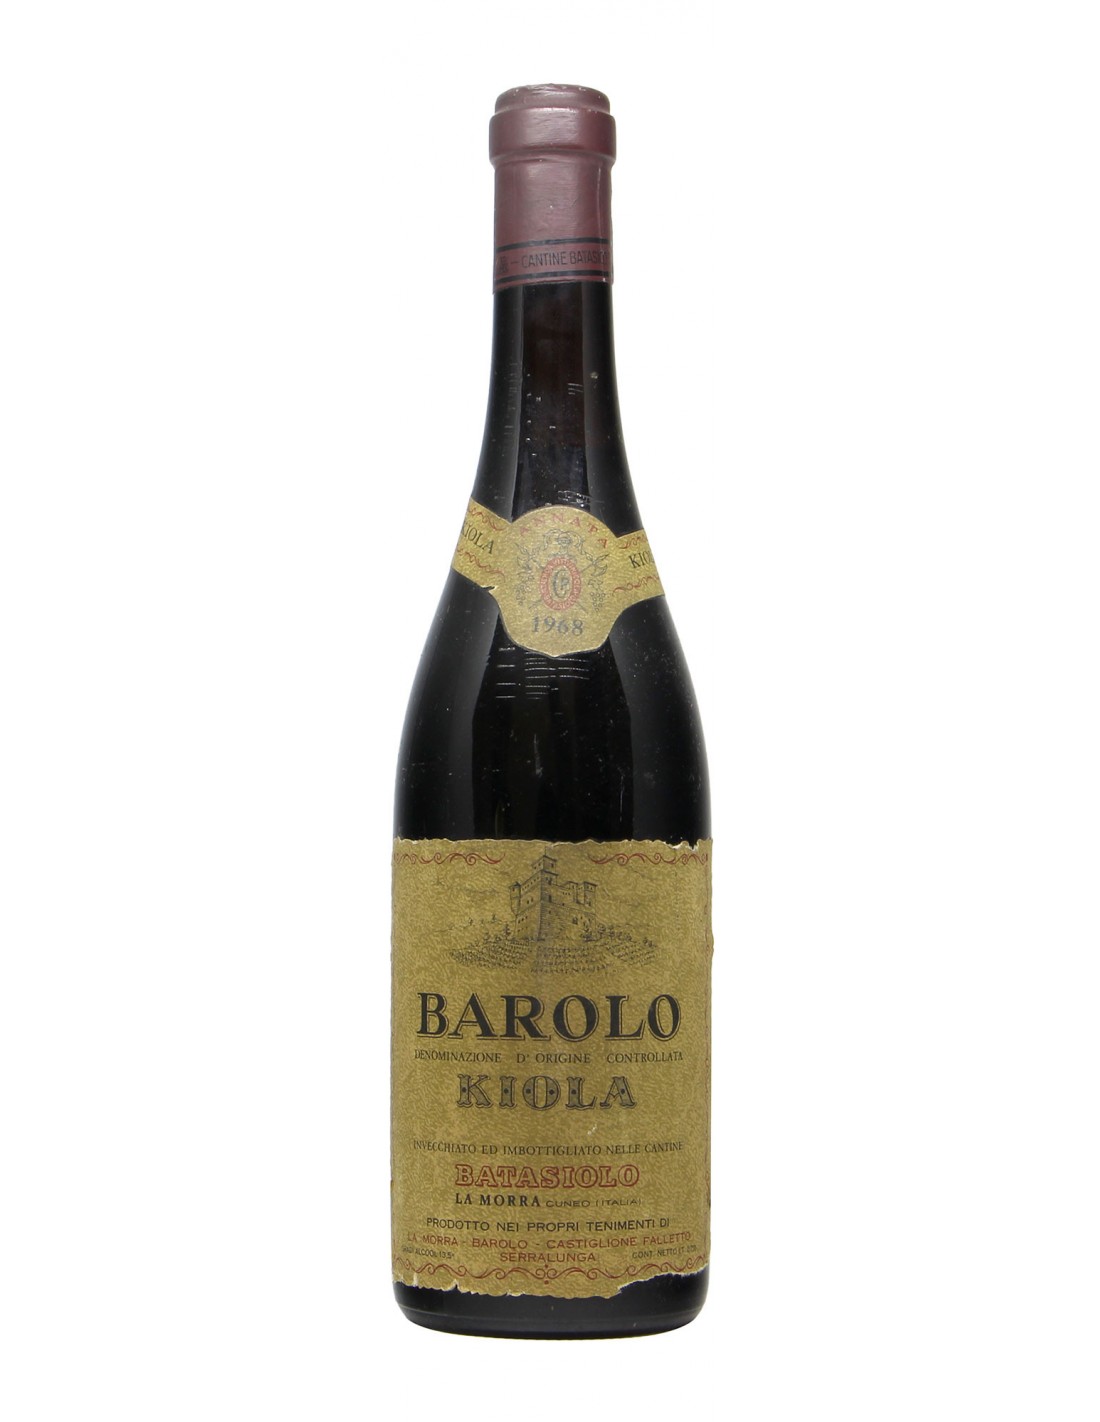 BAROLO 1968 KIOLA Grandi Bottiglie